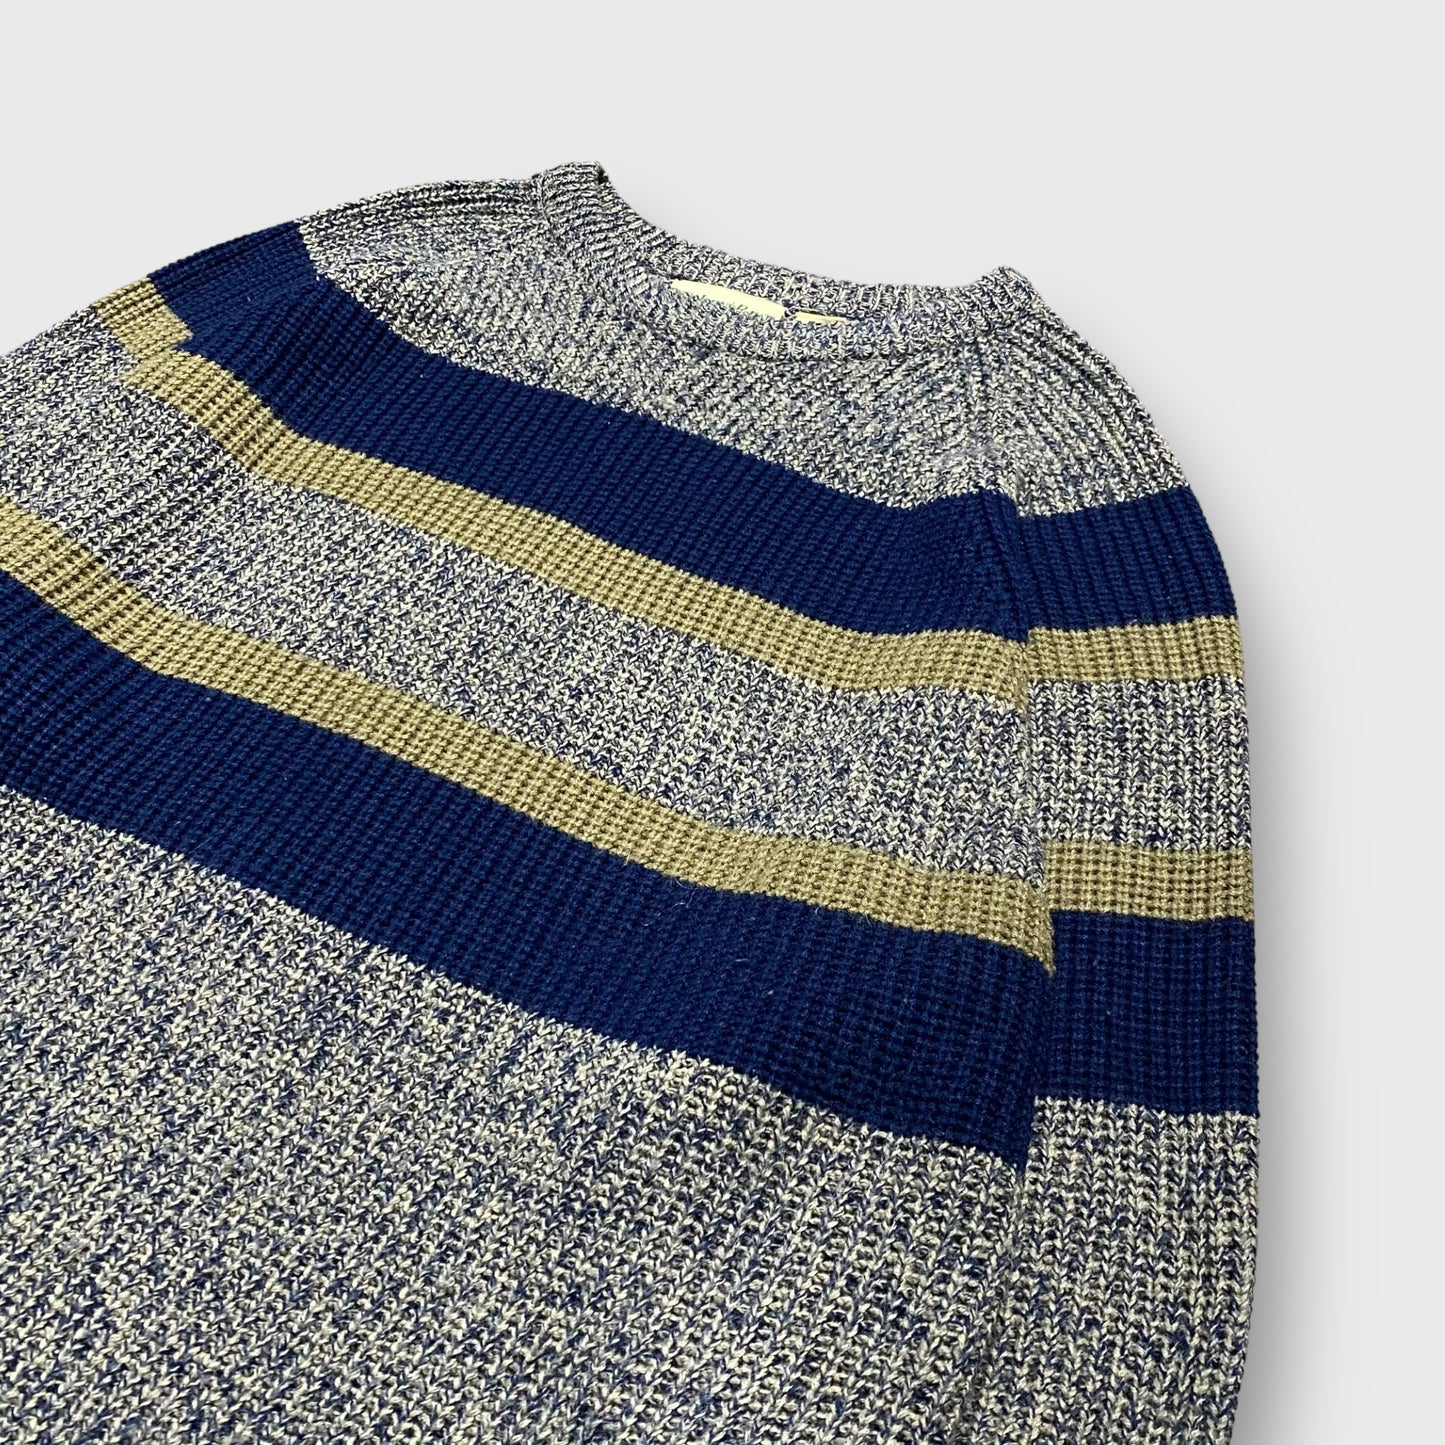 90's "ST JOHN'S BAY" Wide border pattern knit sweater